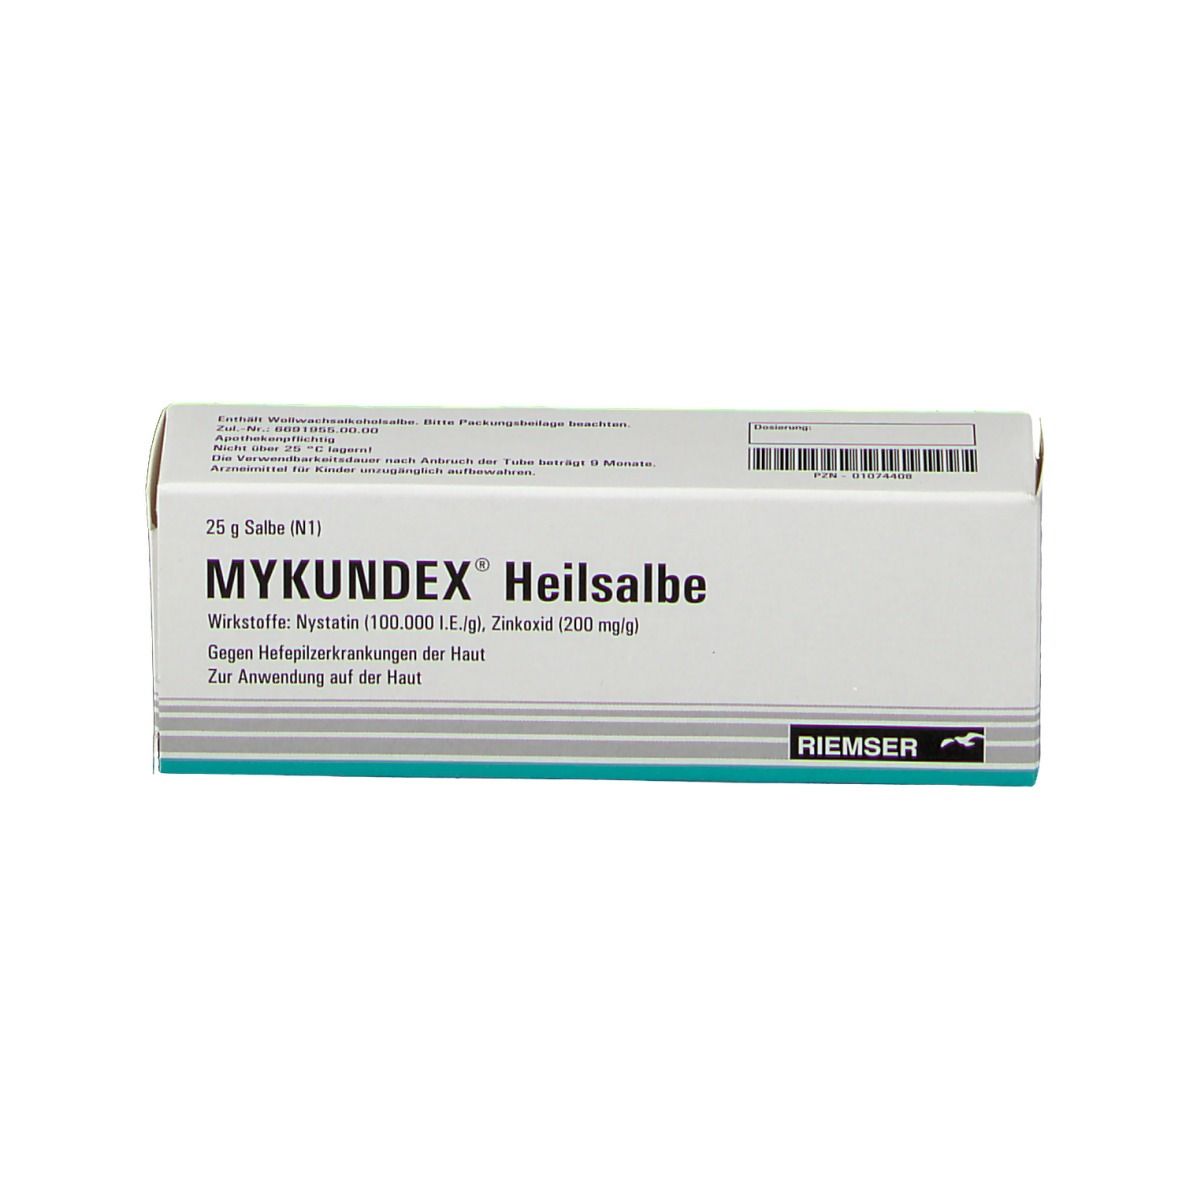 Mykundex® Heilsalbe